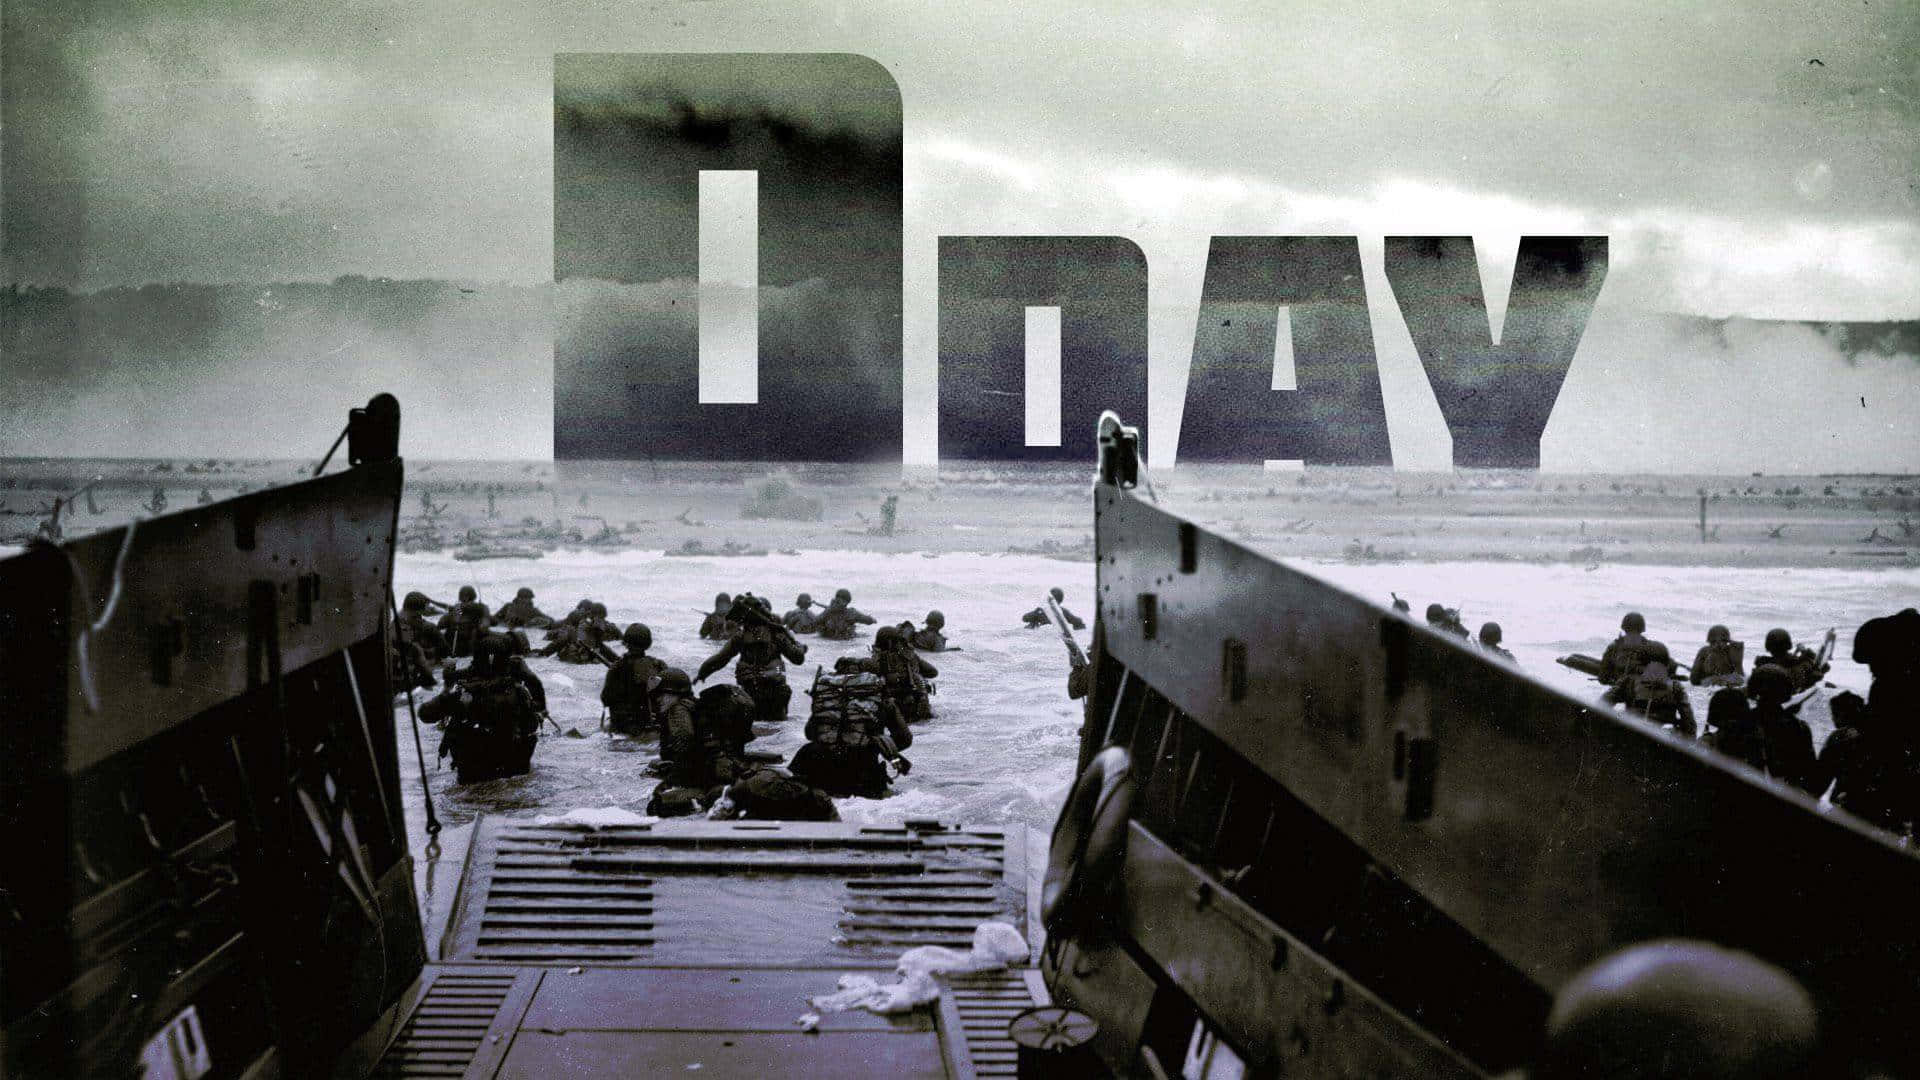 D-day - D-day - D-day - D-day - D-day - D